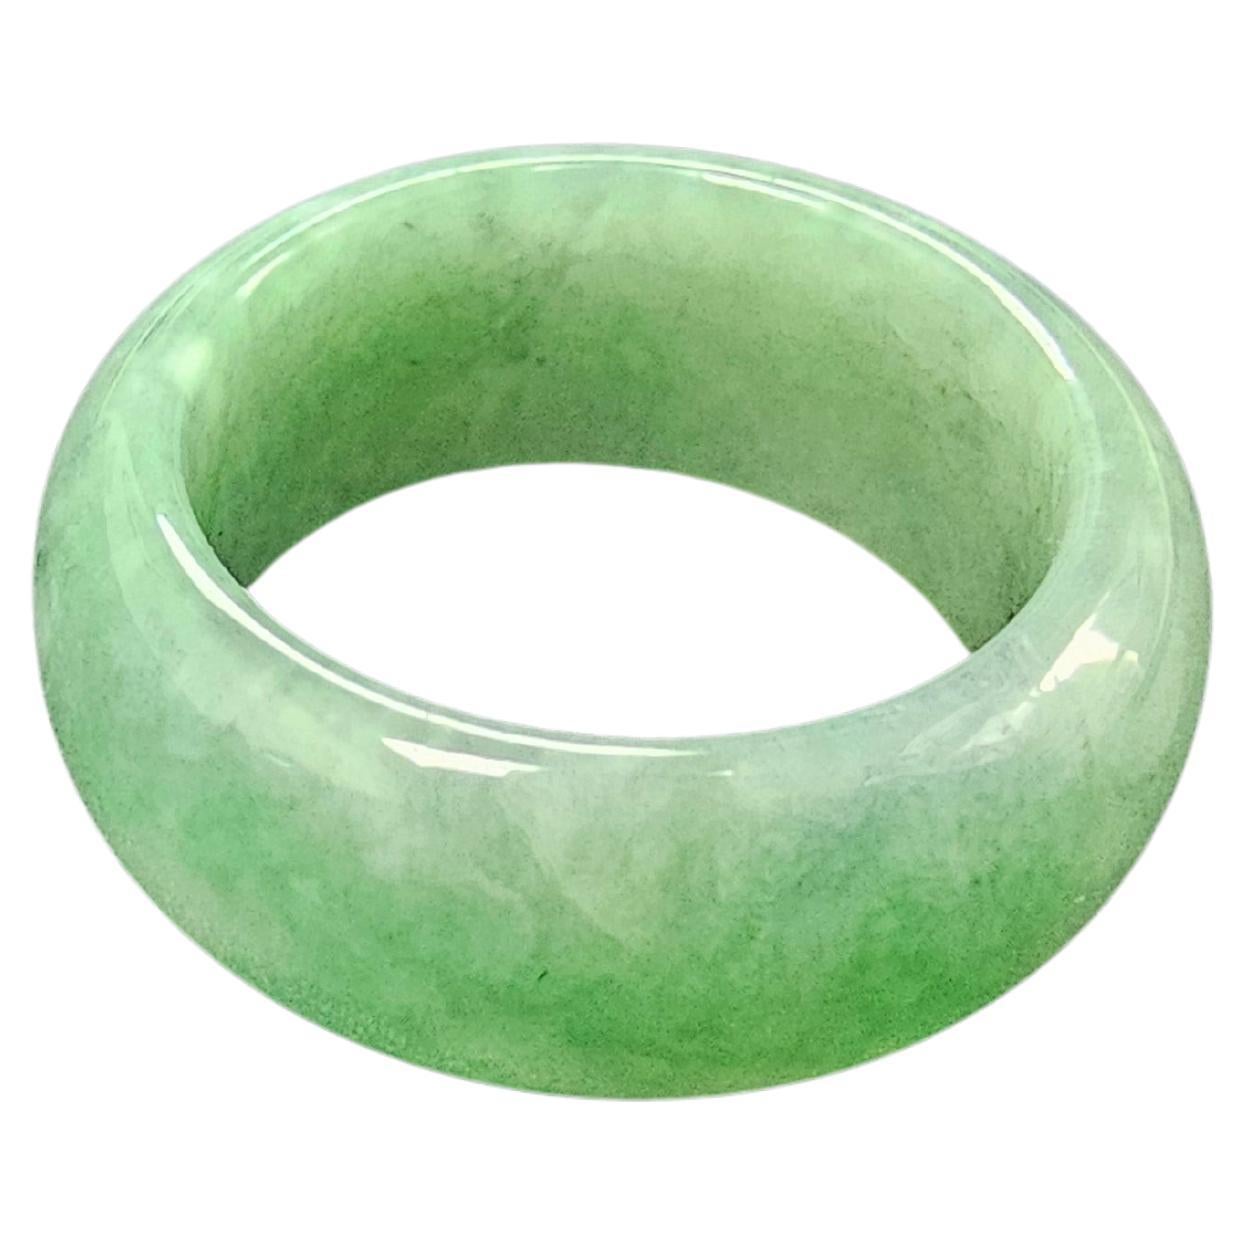 Zertifizierter grüner burmesischer massiver A-Jadeit Infinity Band Cocktail Ring für Männer und Frauen (unisex). Unbehandelt und 100% natürlich,

Unsere feinste und lichtdurchlässigste Serie von burmesischen A-Jadeit Infinity Band Ringen. Unser